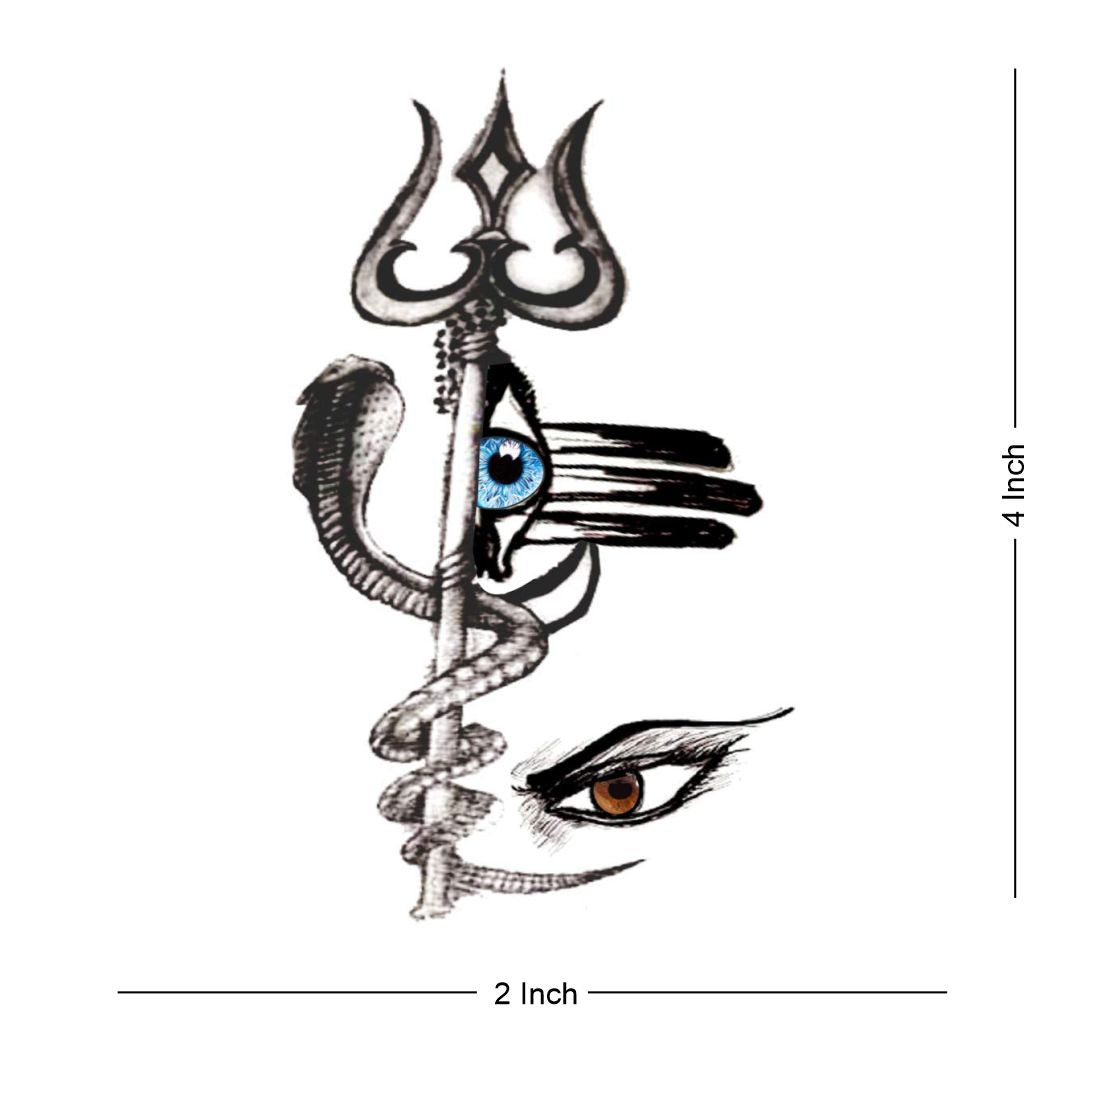 Voorkoms Temporary Tattoo Waterproof For Girls Men Women Beautiful &  Popular Water Transfer 3D Lord Shiva Eye Trishul Snake Size 10.5 CM x 6CM -  1PC : Amazon.in: Beauty